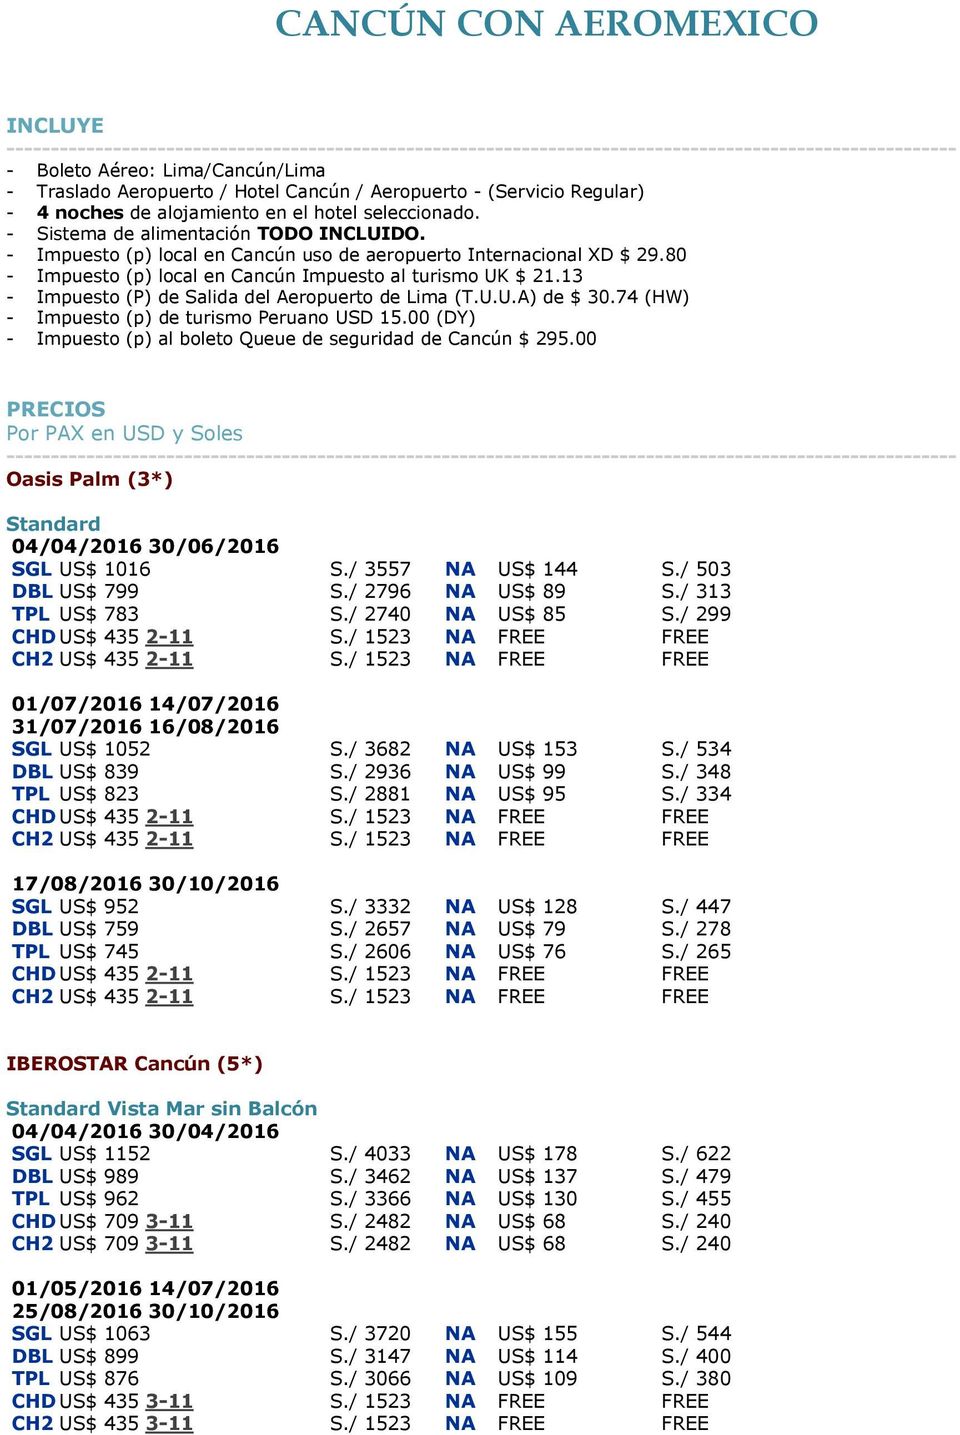 13 - Impuesto (P) de Salida del Aeropuerto de Lima (T.U.U.A) de $ 30.74 (HW) - Impuesto (p) de turismo Peruano USD 15.00 (DY) - Impuesto (p) al boleto Queue de seguridad de Cancún $ 295.